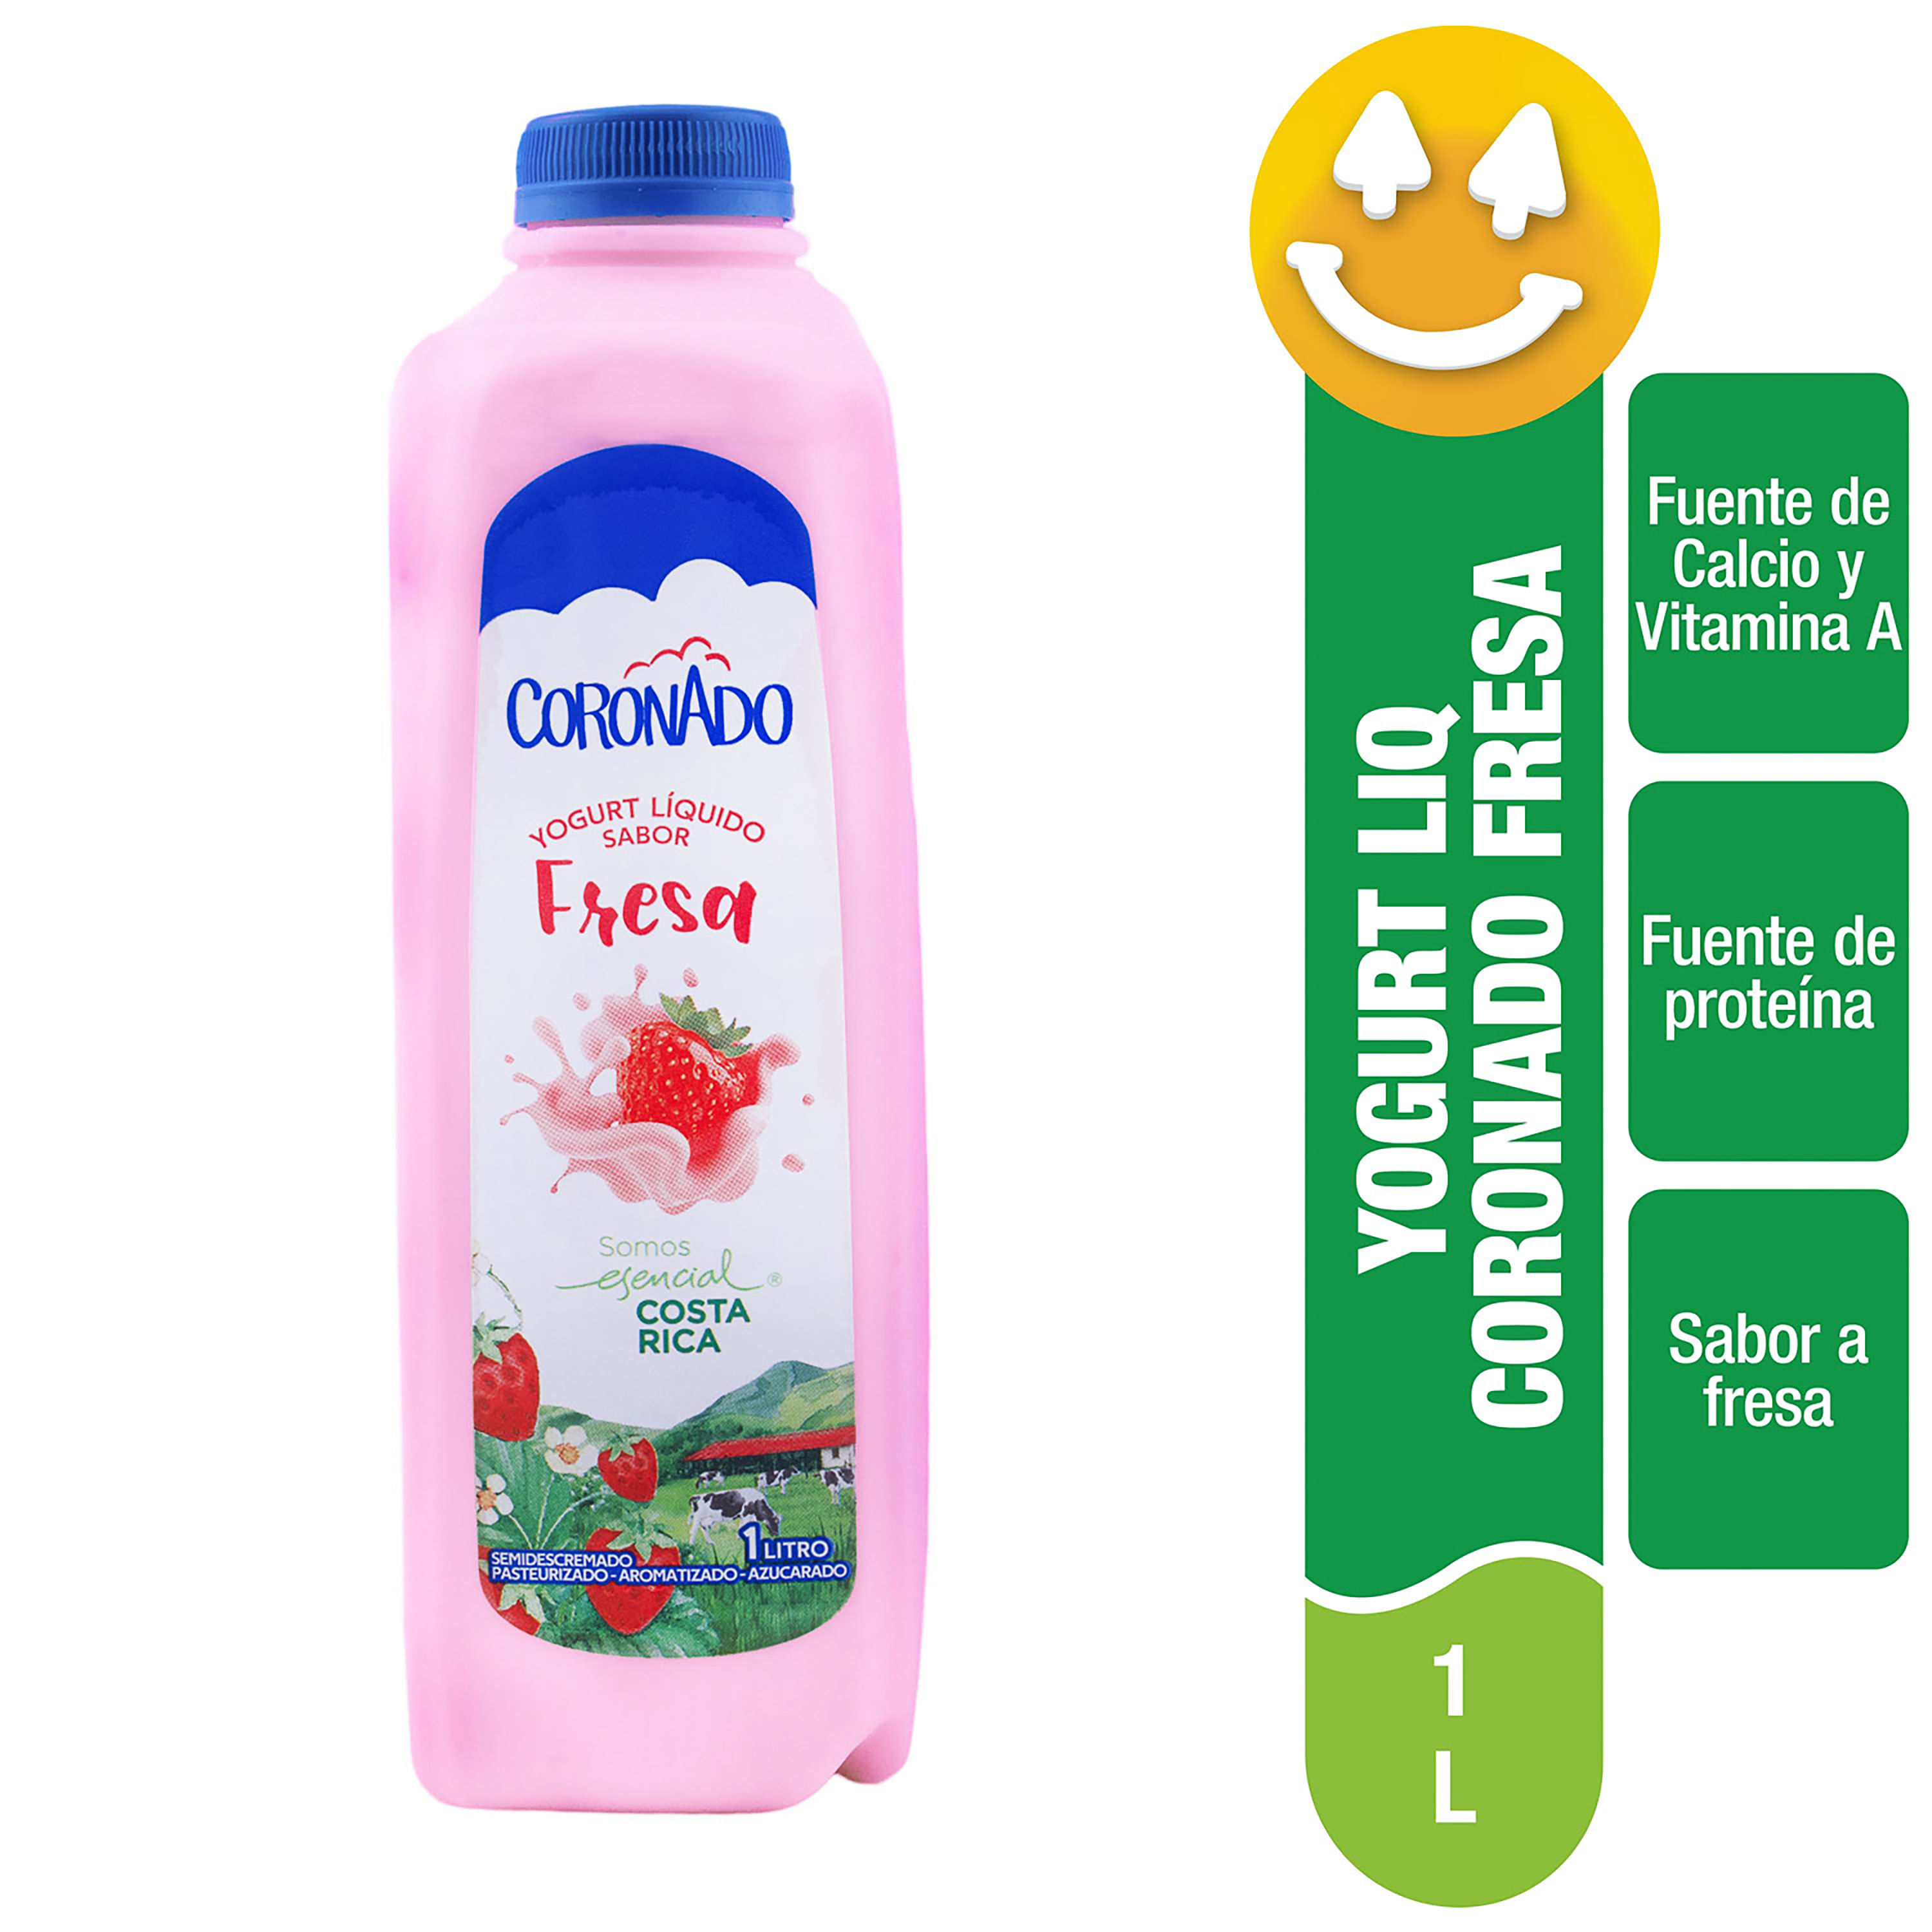 Yogurt Líquido Coronado Sabor Fresa, Semidescremado - 1Lt